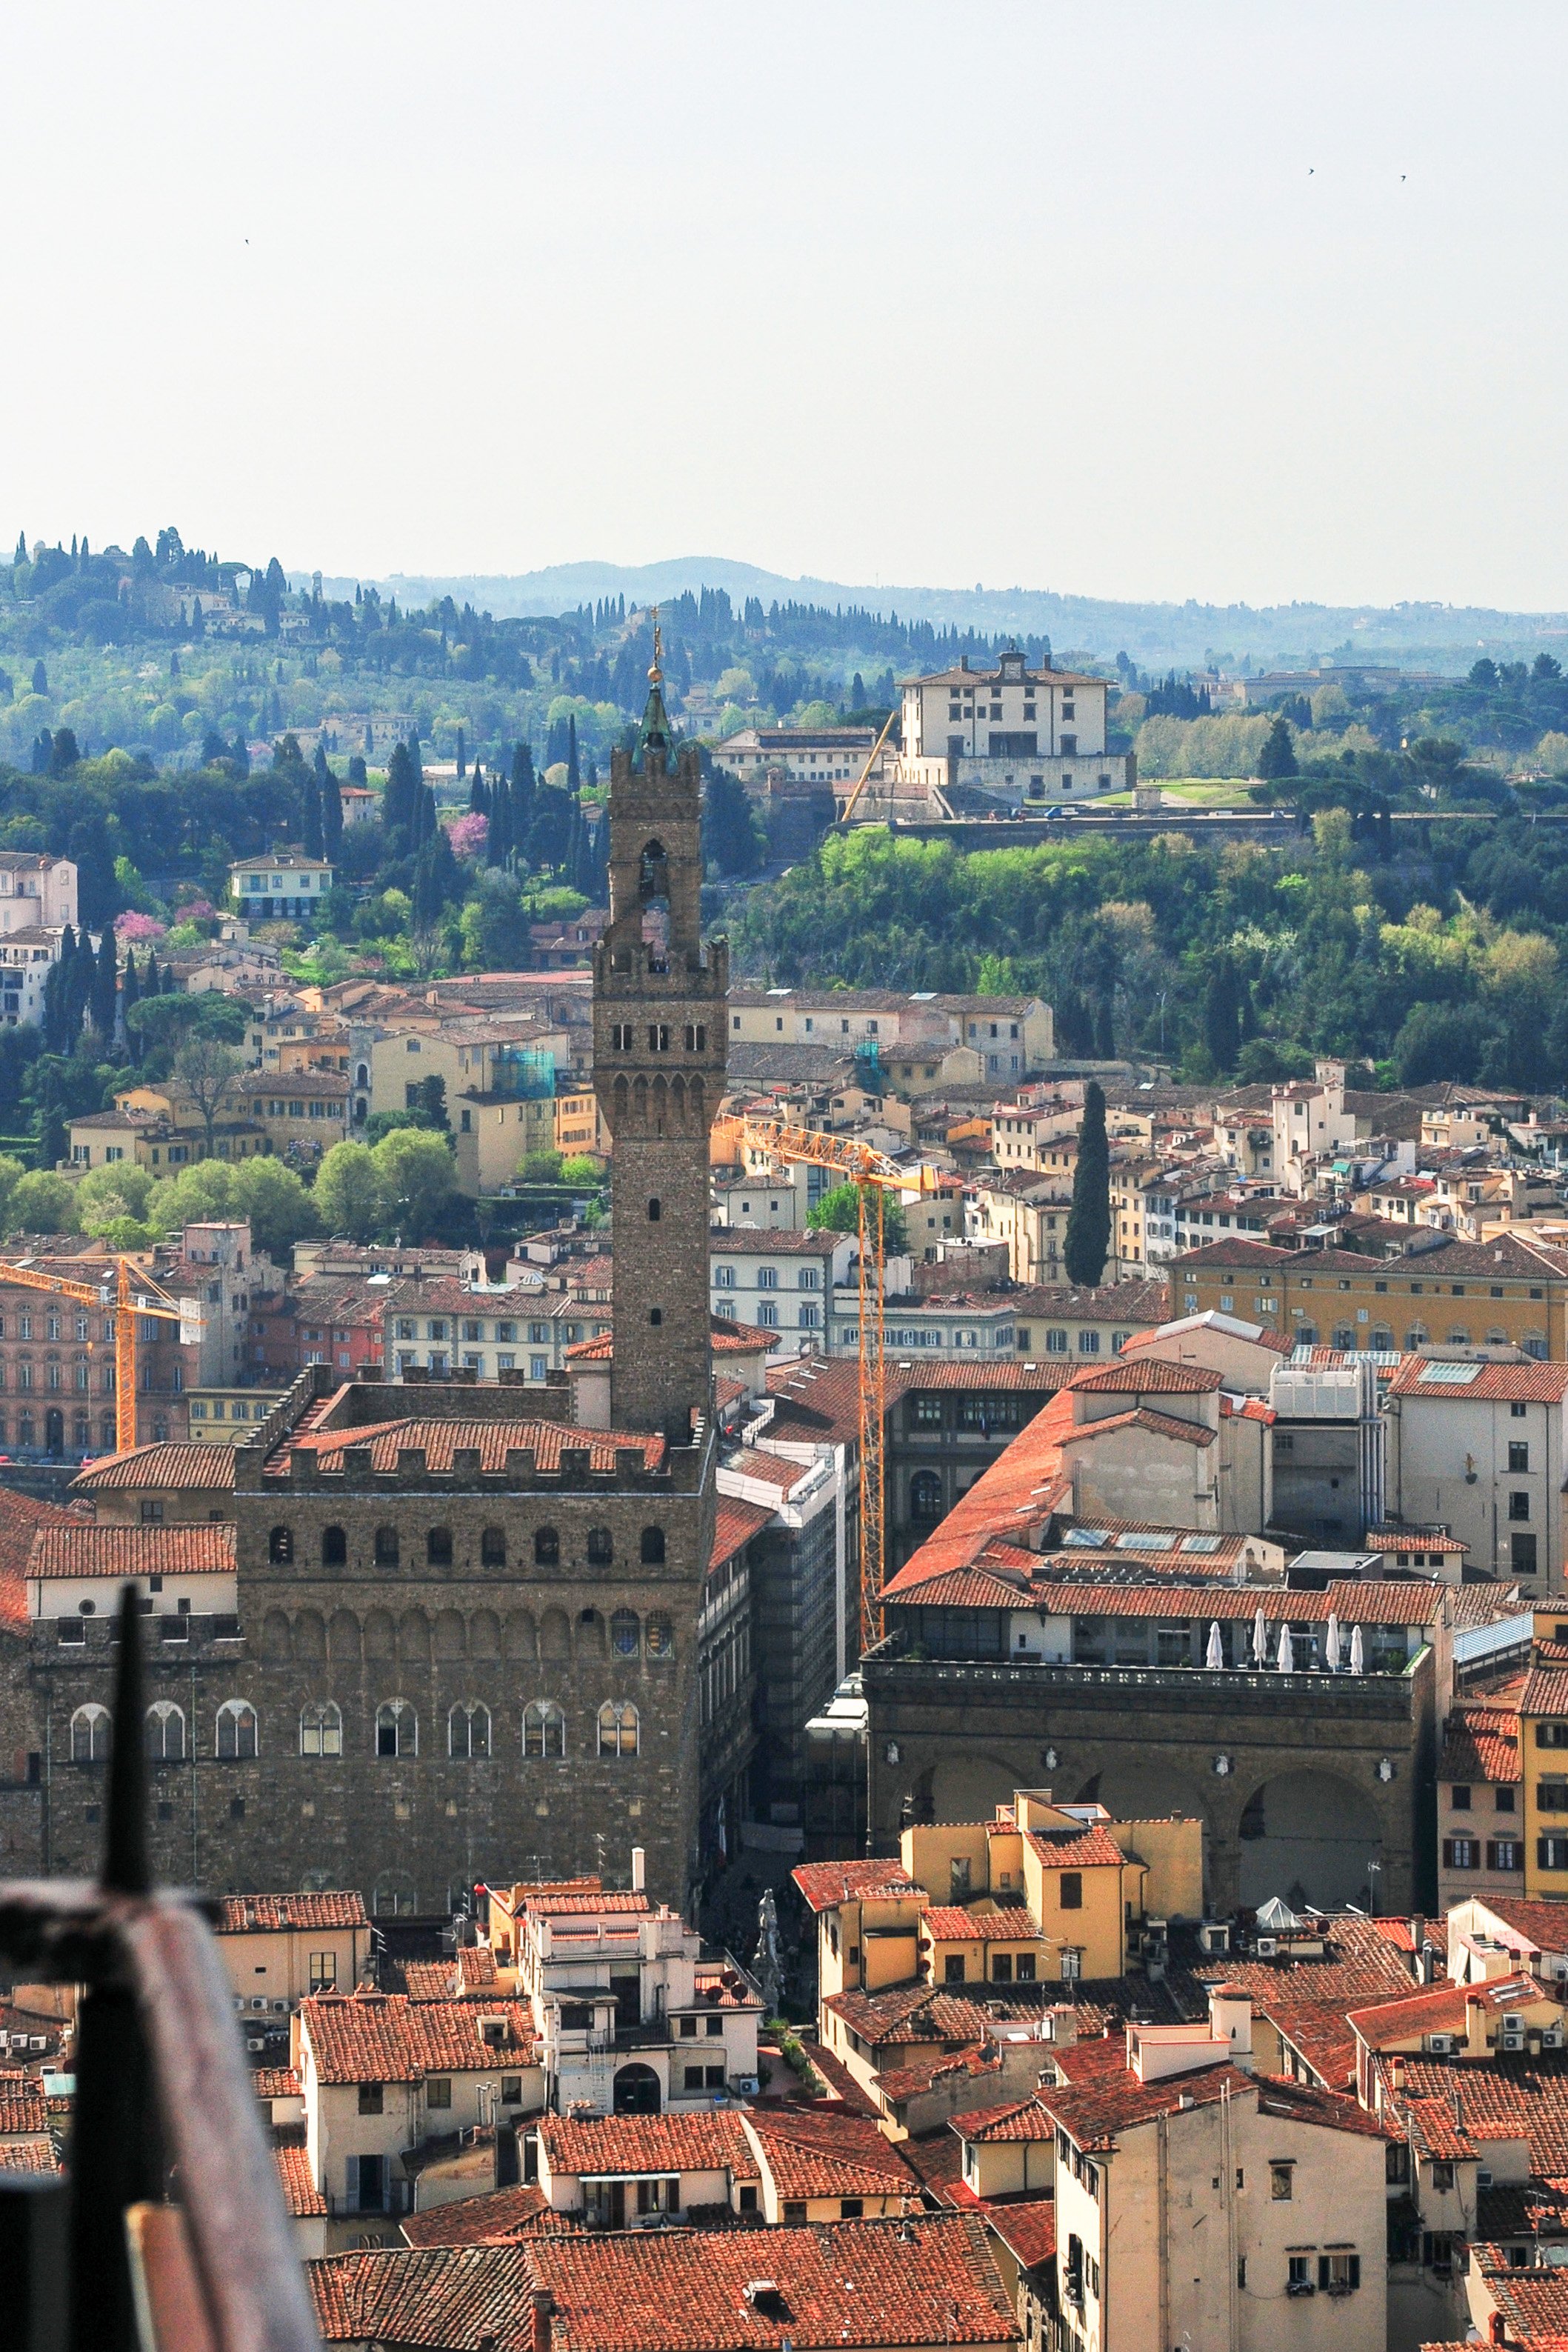 Palazzo Vecchio as seen from the top of the Duomo Santa Maria del Fiore